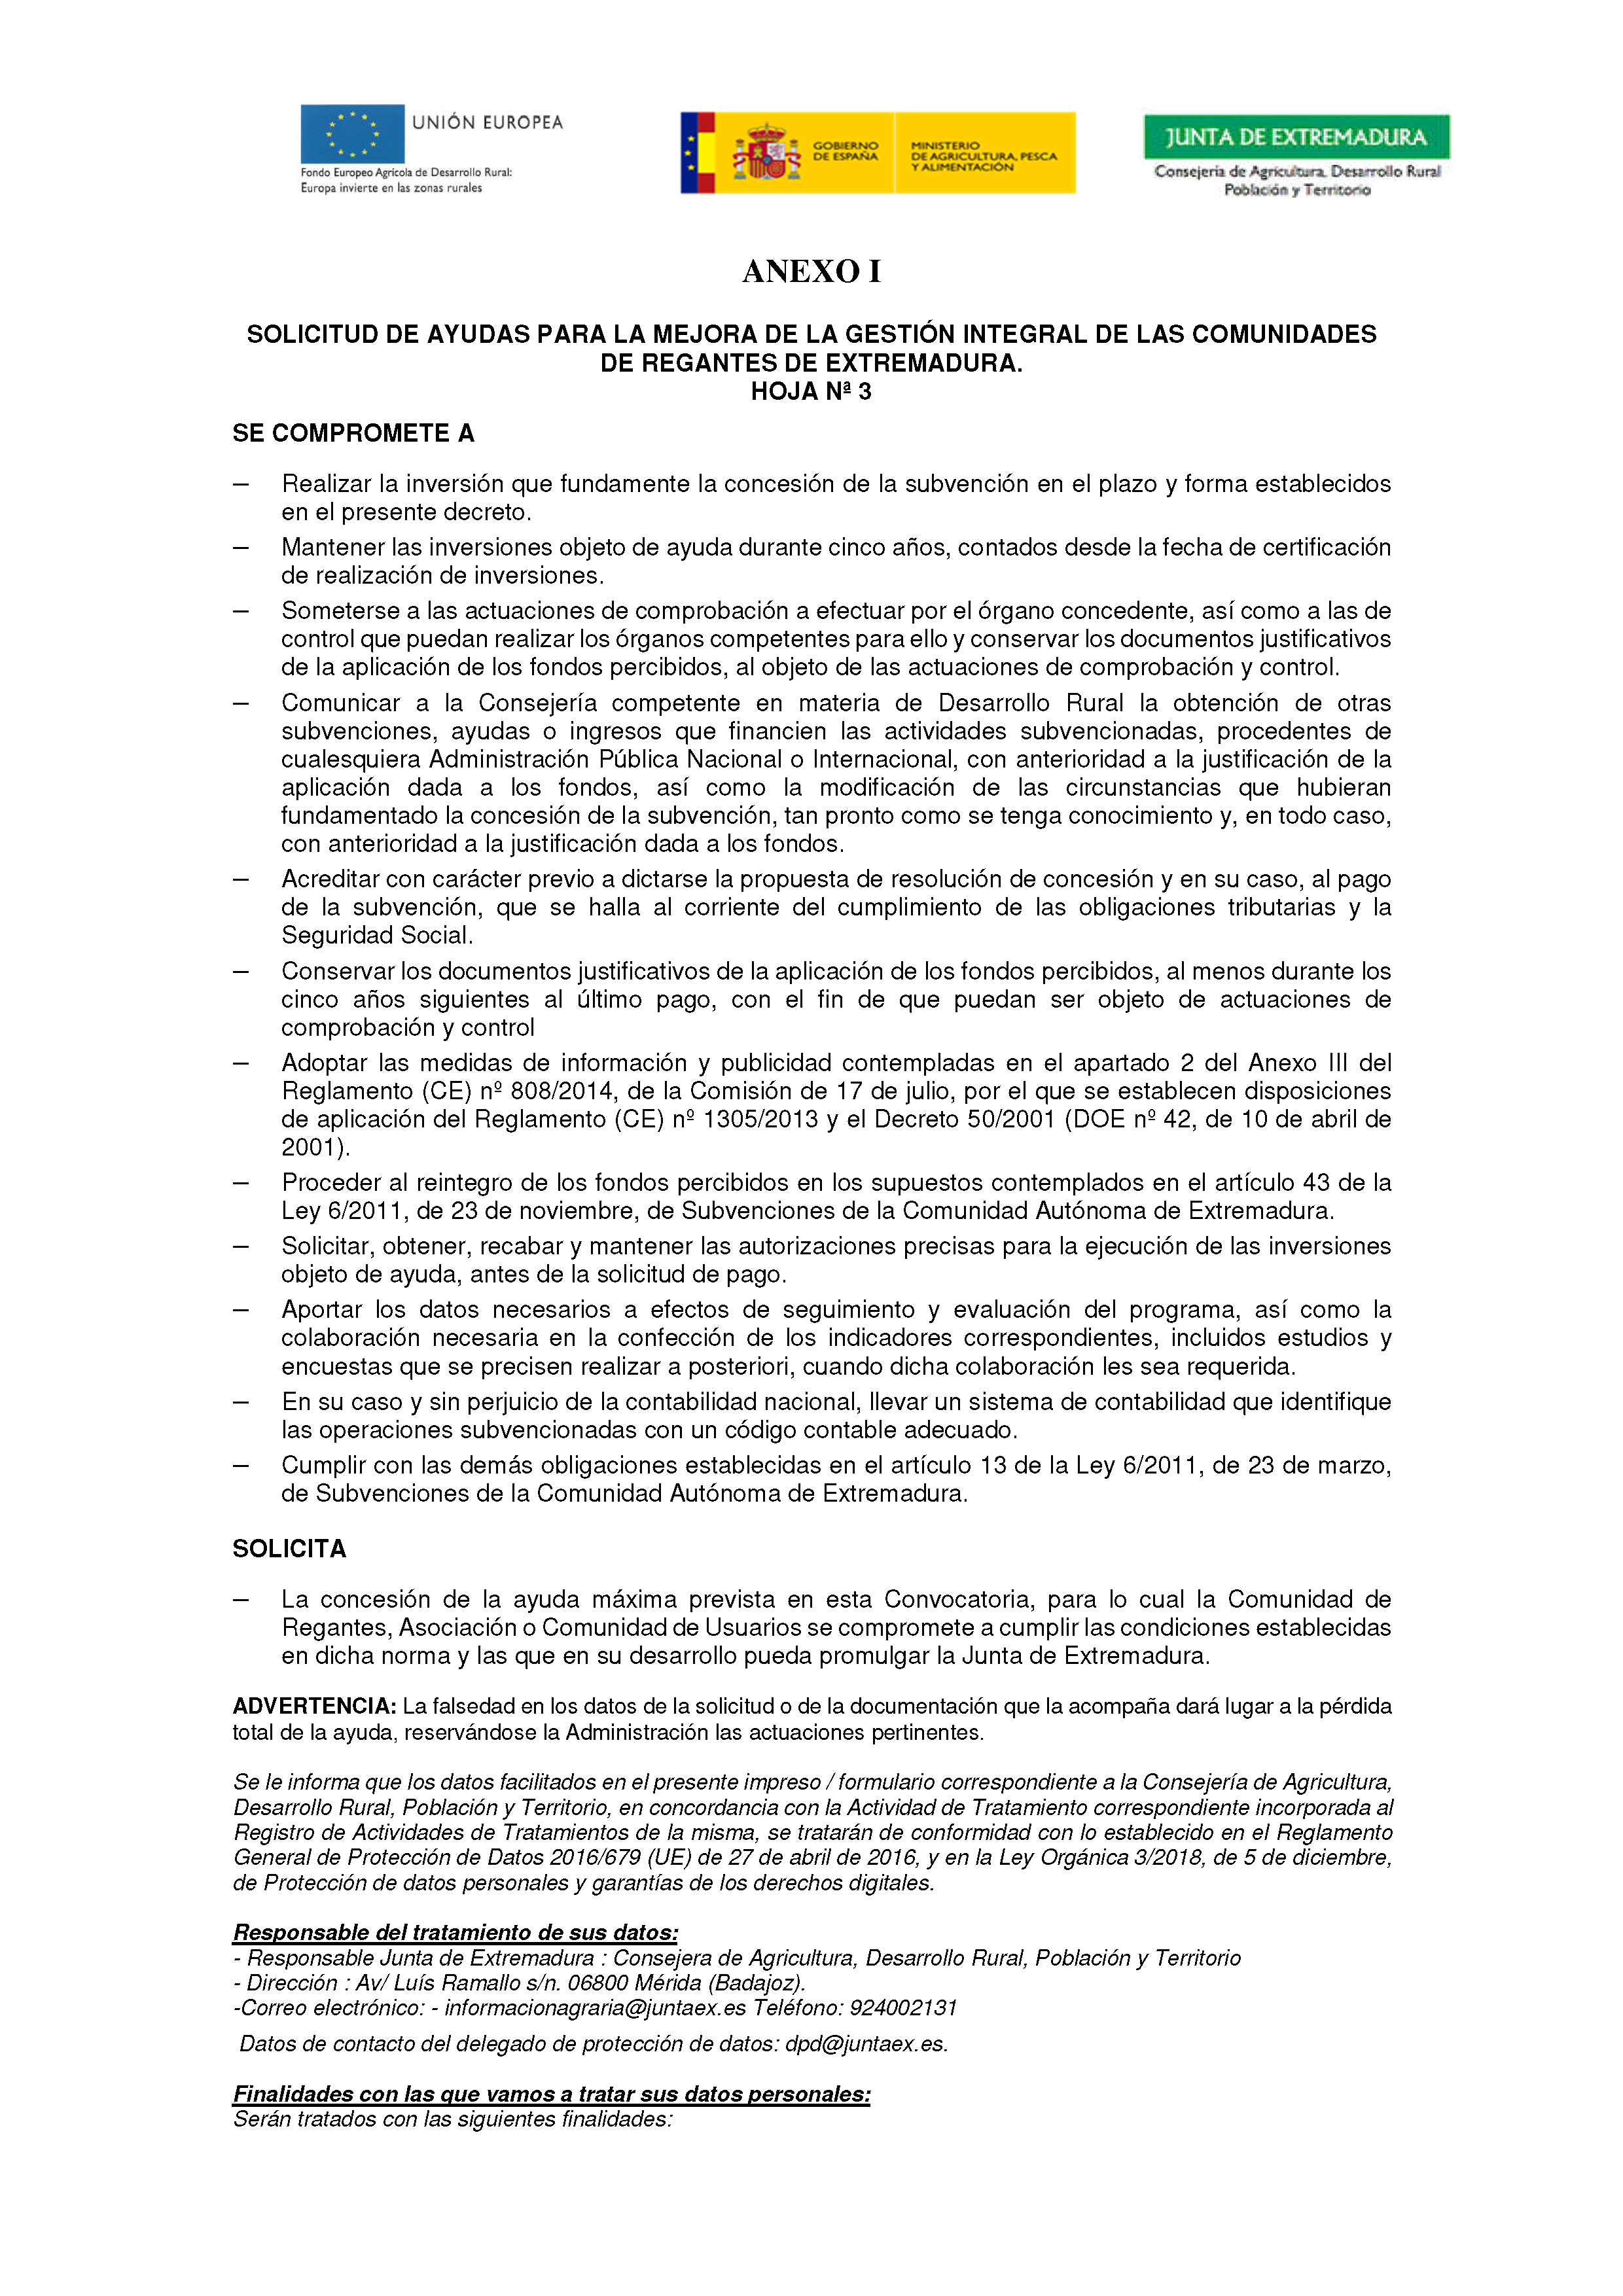 ANEXO I SOLICITUD DE AYUDAS PARA LA MEJORA DE LA GESTION INTEGRAL DE LAS COMUNIDADES DE REGANTES DE EXTREMADURA PAG.5